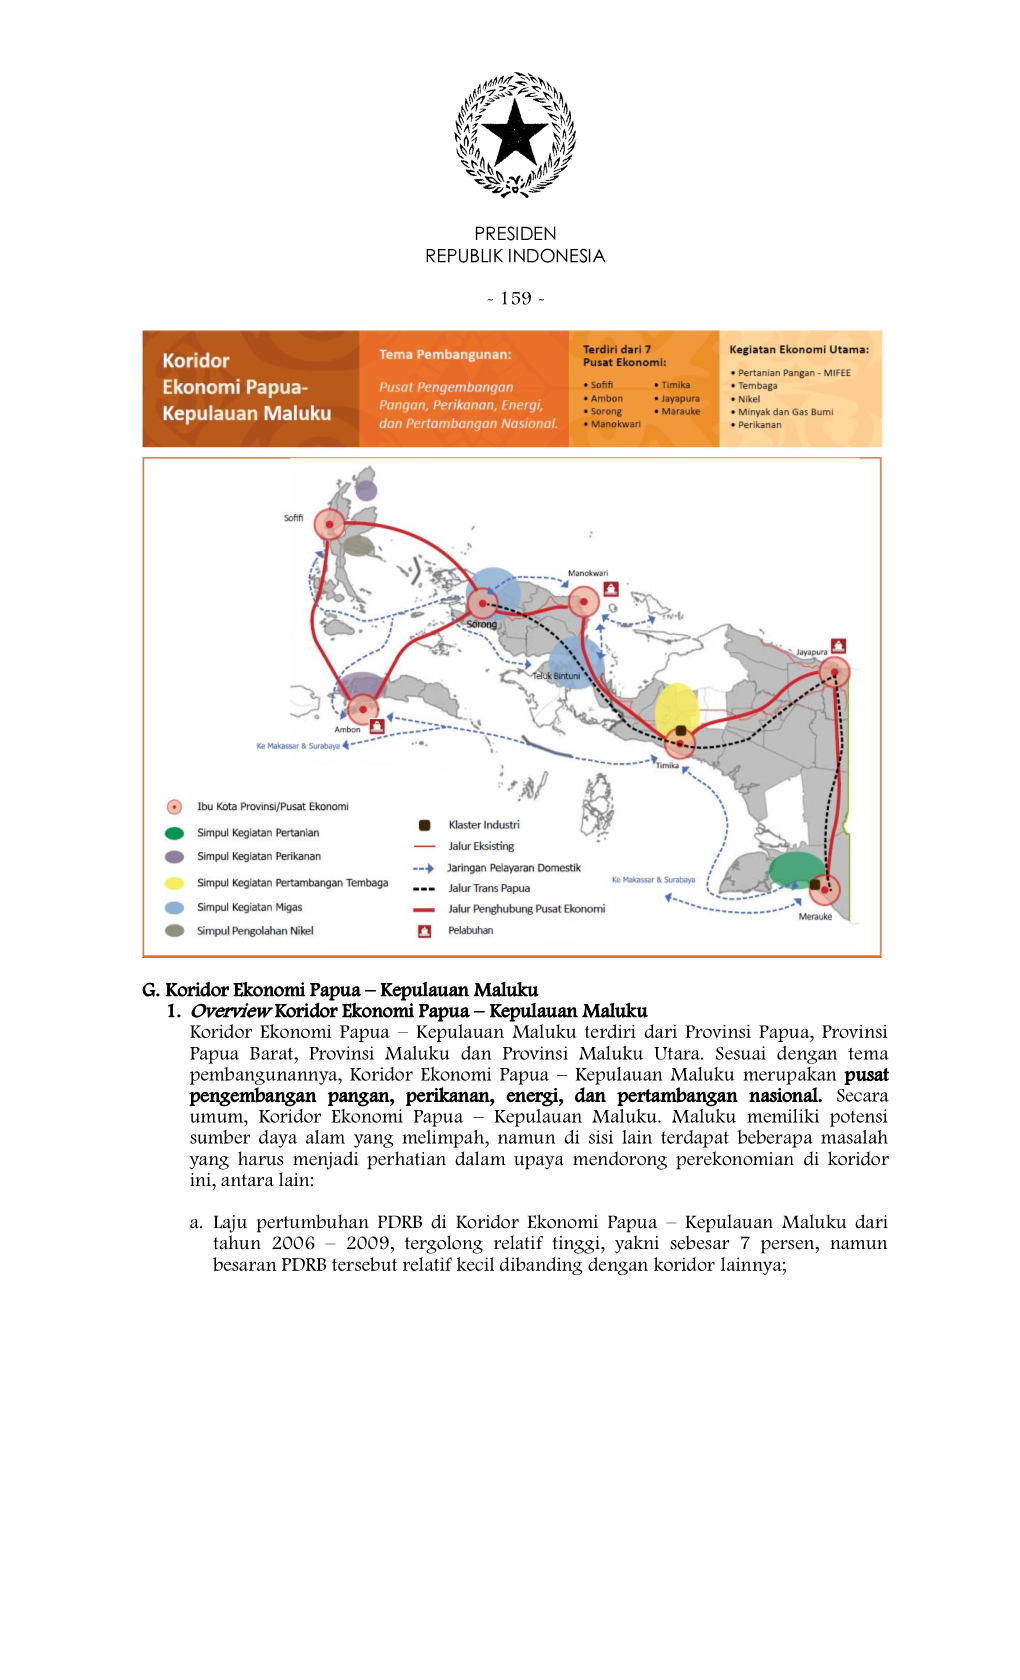 Kepulauan Maluku 1. Overview Koridor Ekonomi Papua